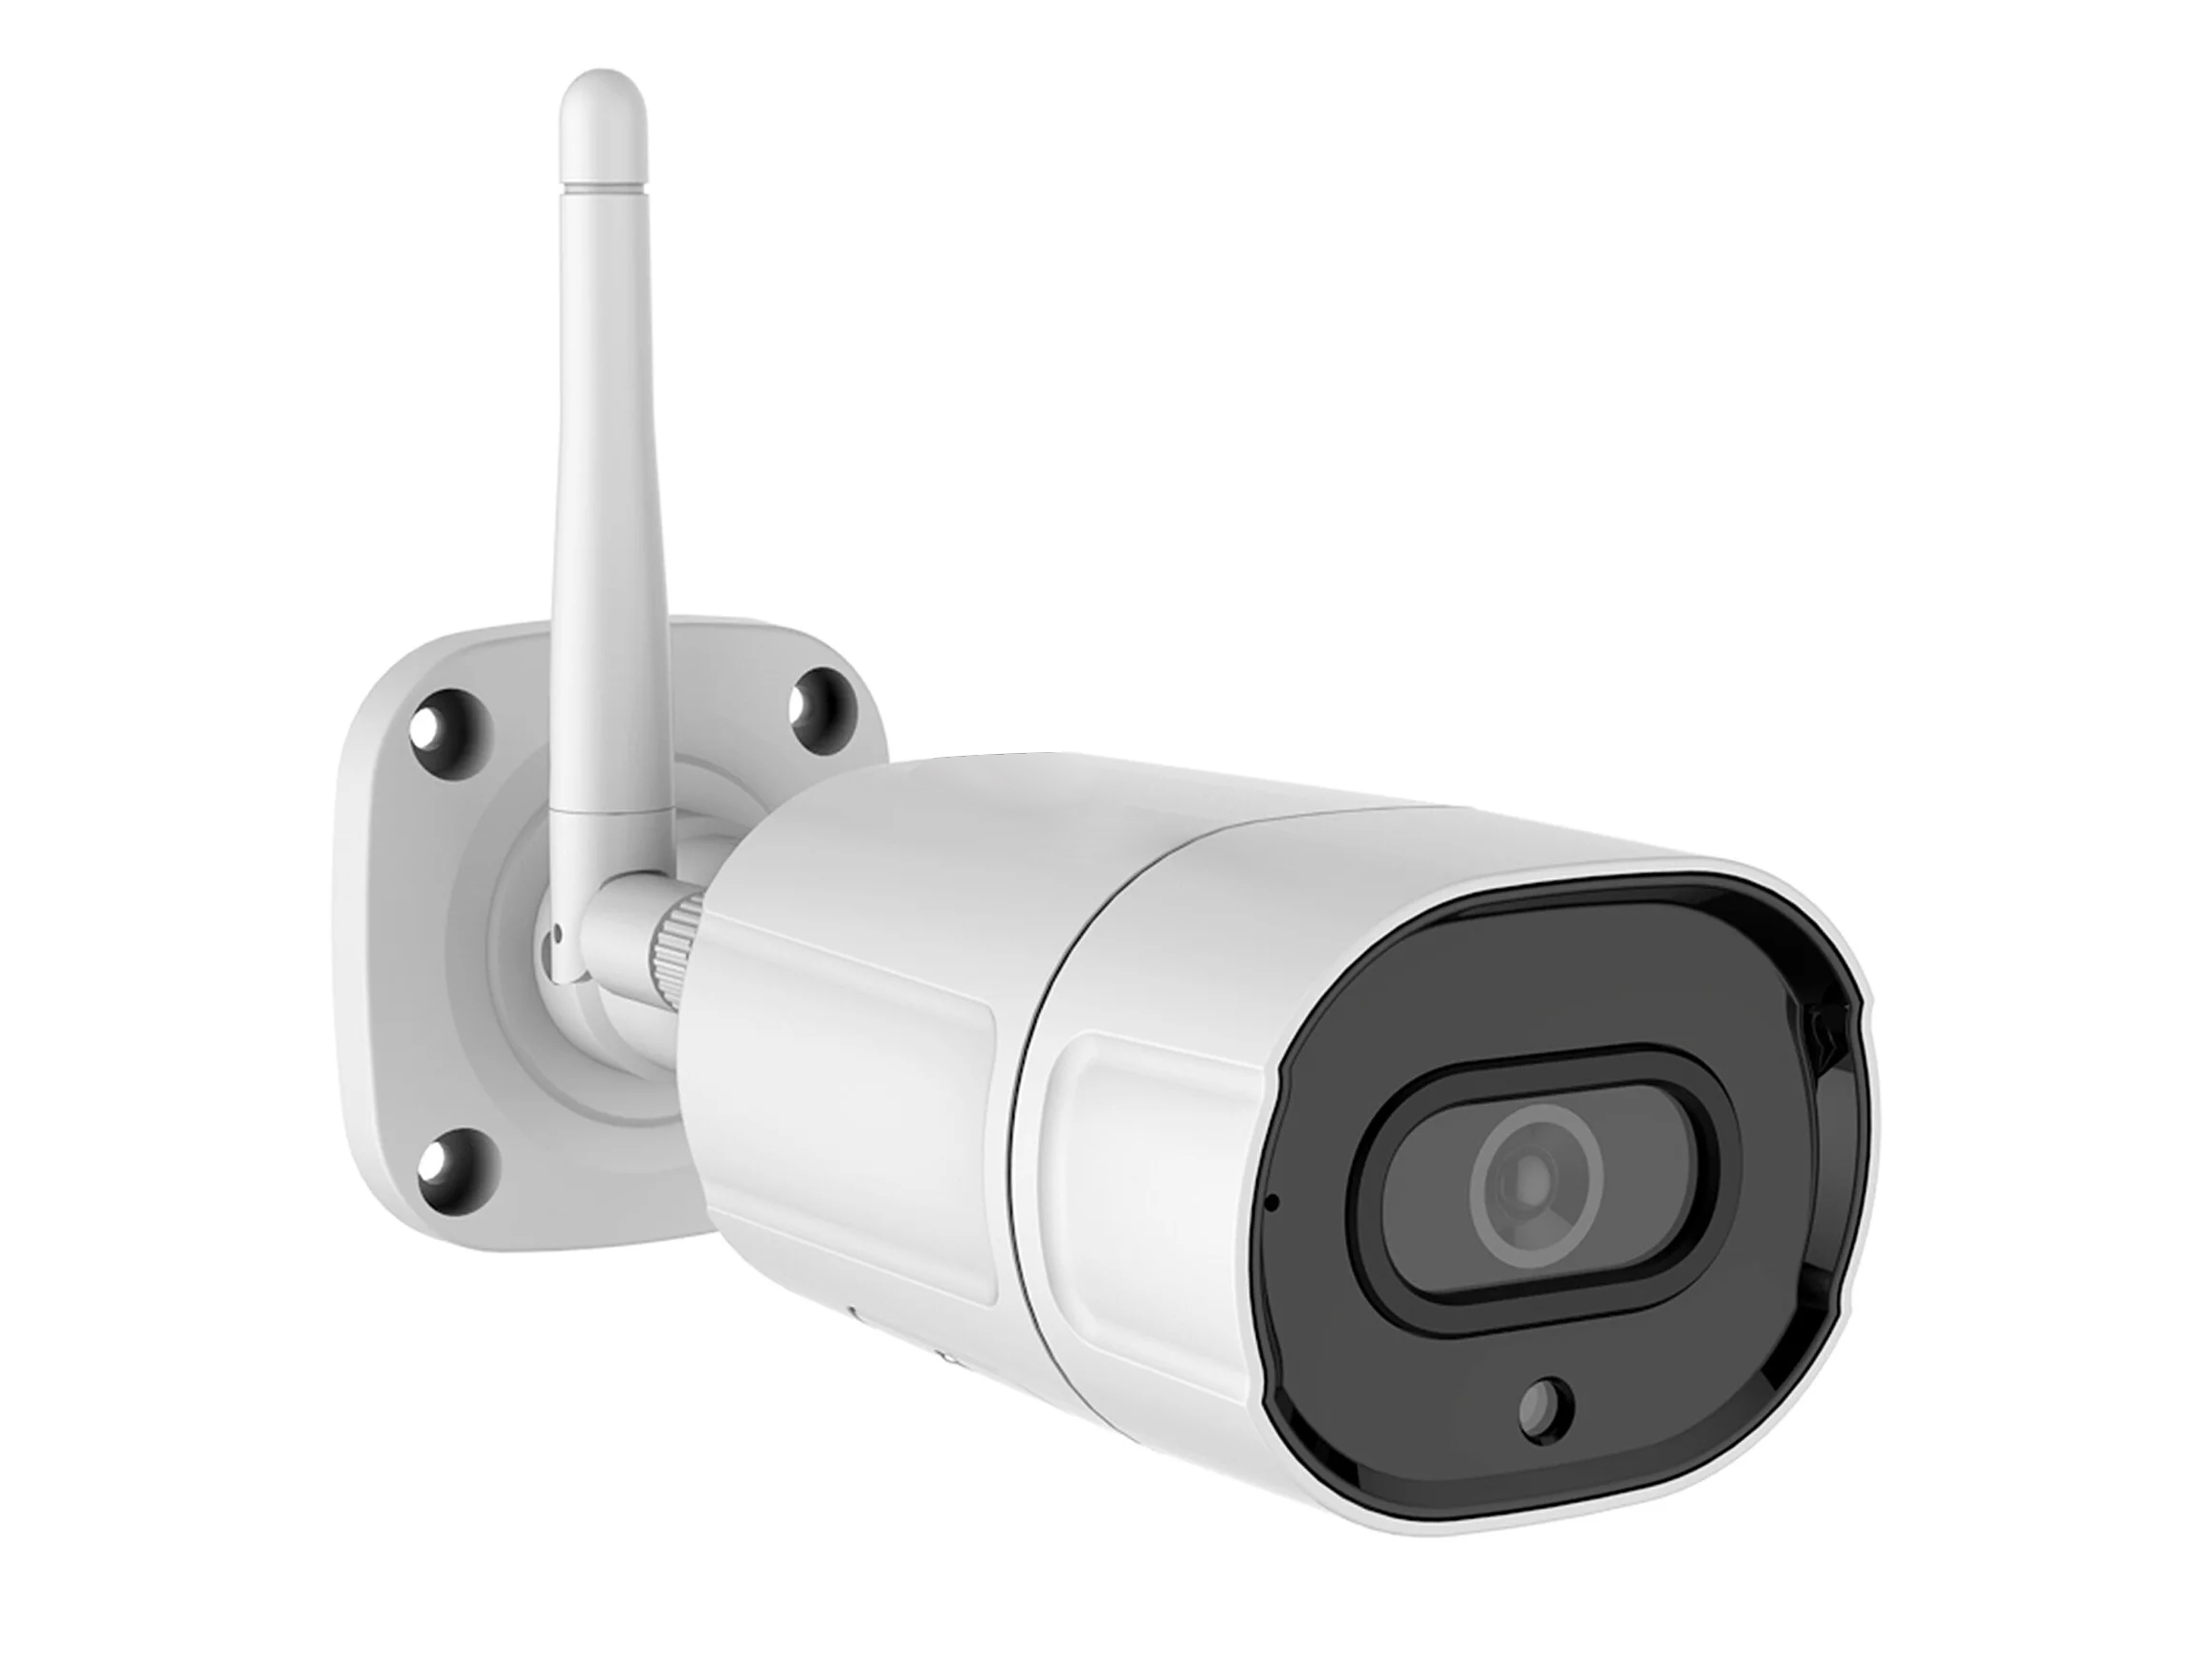 Уличная 4K Wi-Fi IP-камера ночного видеонаблюдения Link 402-ASW8-8GH 160921856 уличная камера ночного видеонаблюдения link 4k wi fi ip 403 asw8 8gh 160921857